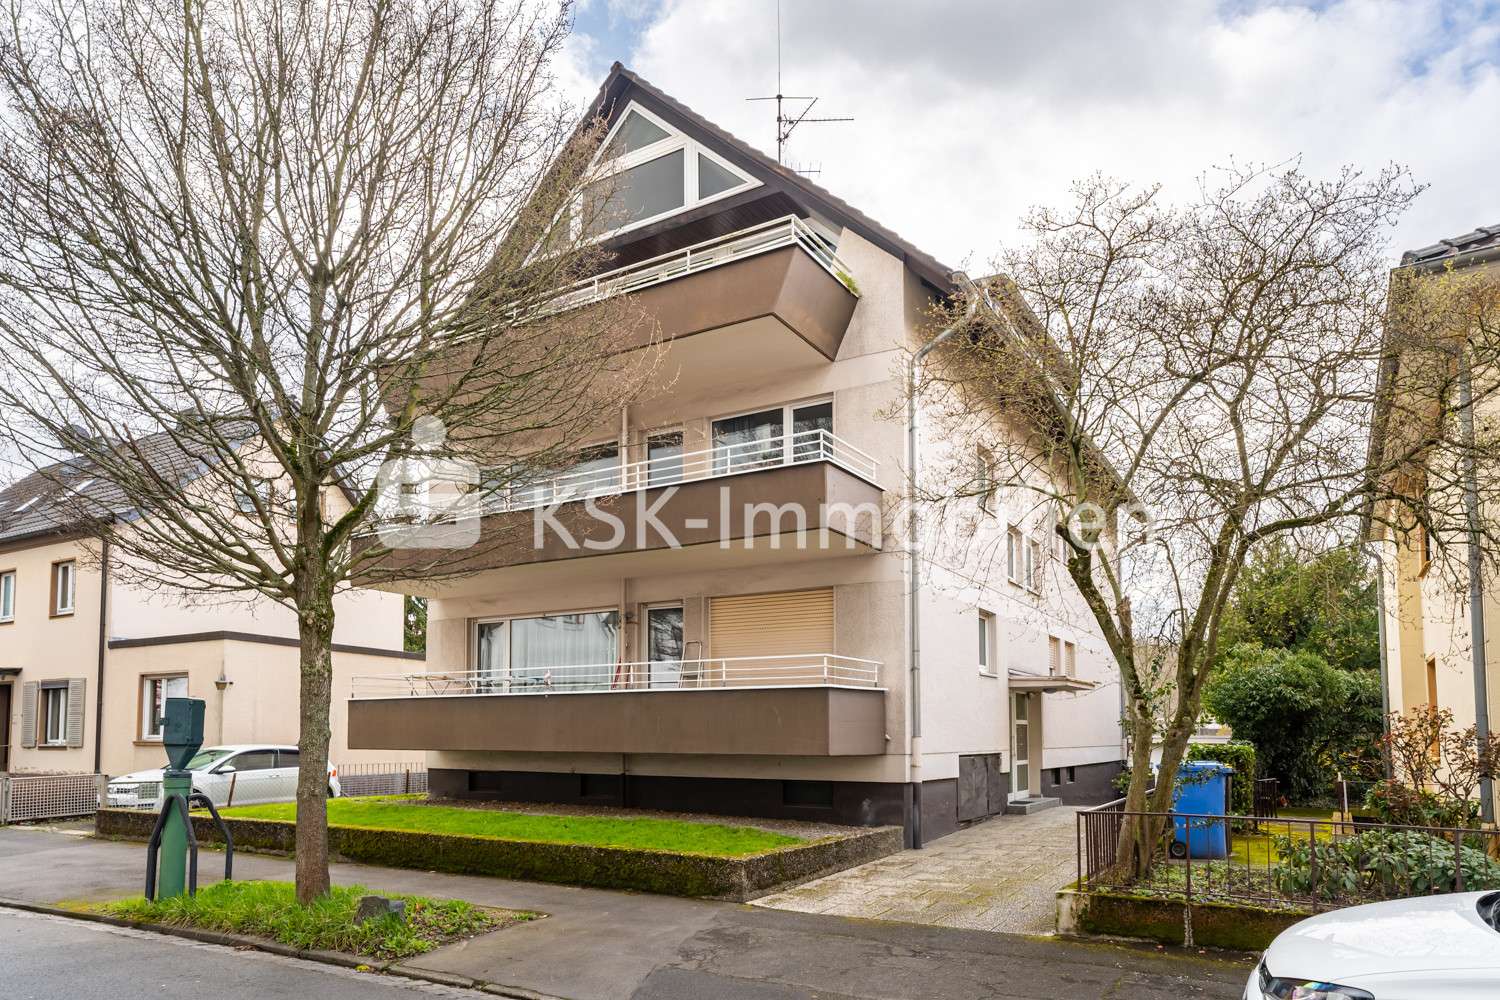 115252 Außenansicht - Mehrfamilienhaus in 53175 Bonn mit 339m² als Kapitalanlage günstig kaufen